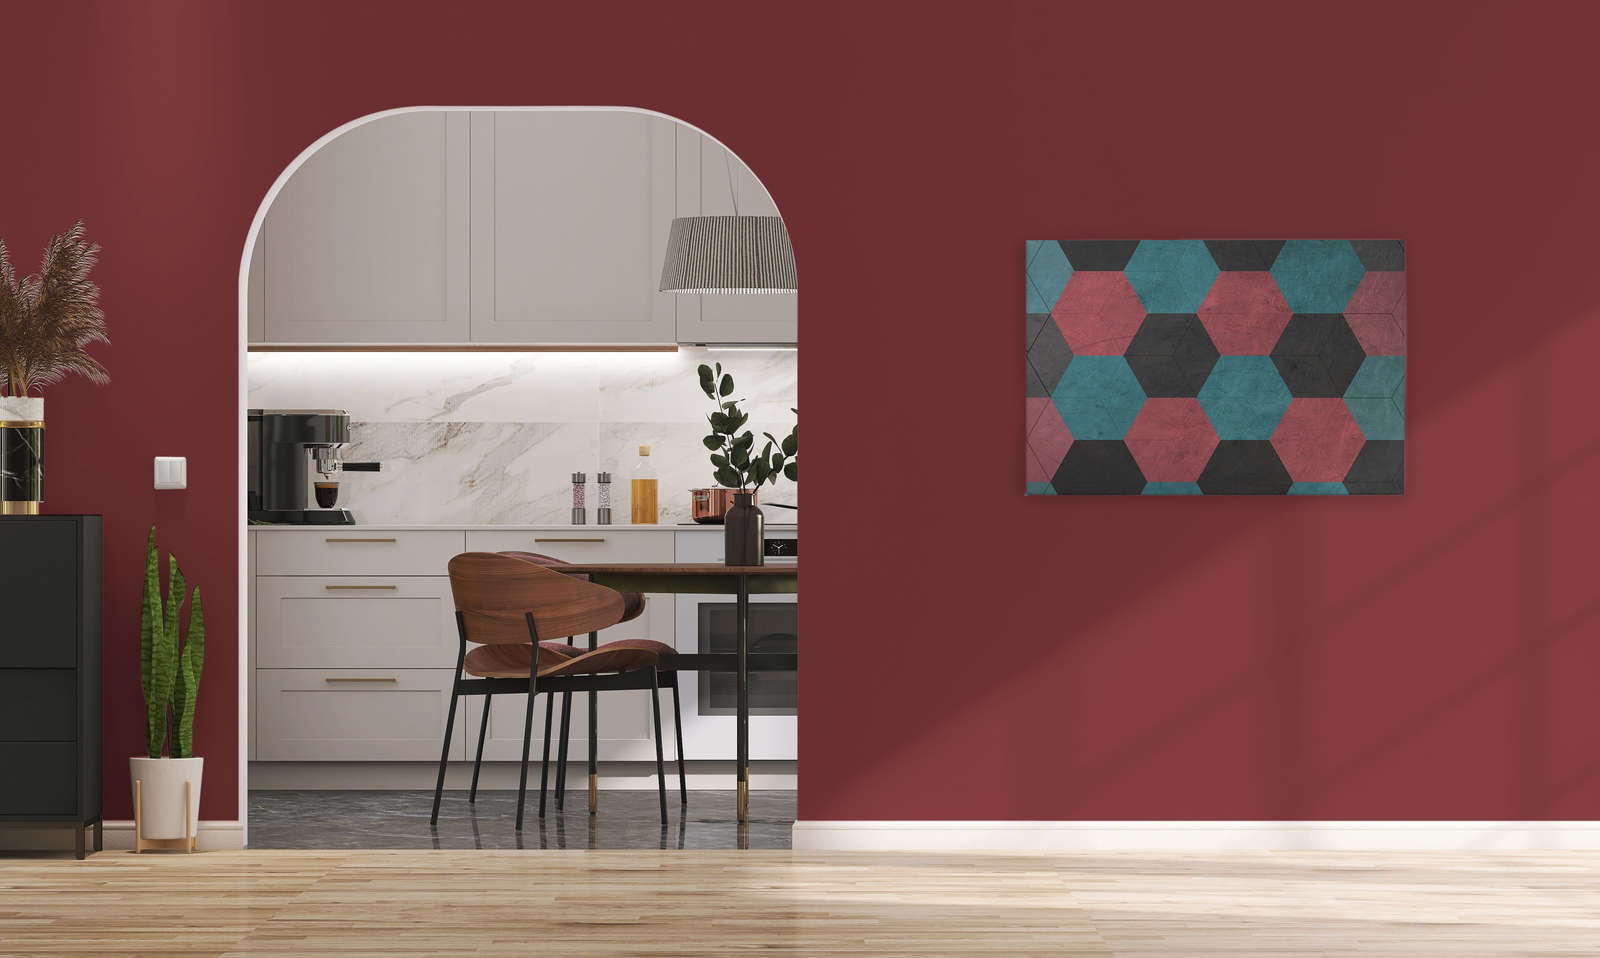             Tableau toile Hexagon carreaux vintage - 0,90 m x 0,60 m
        